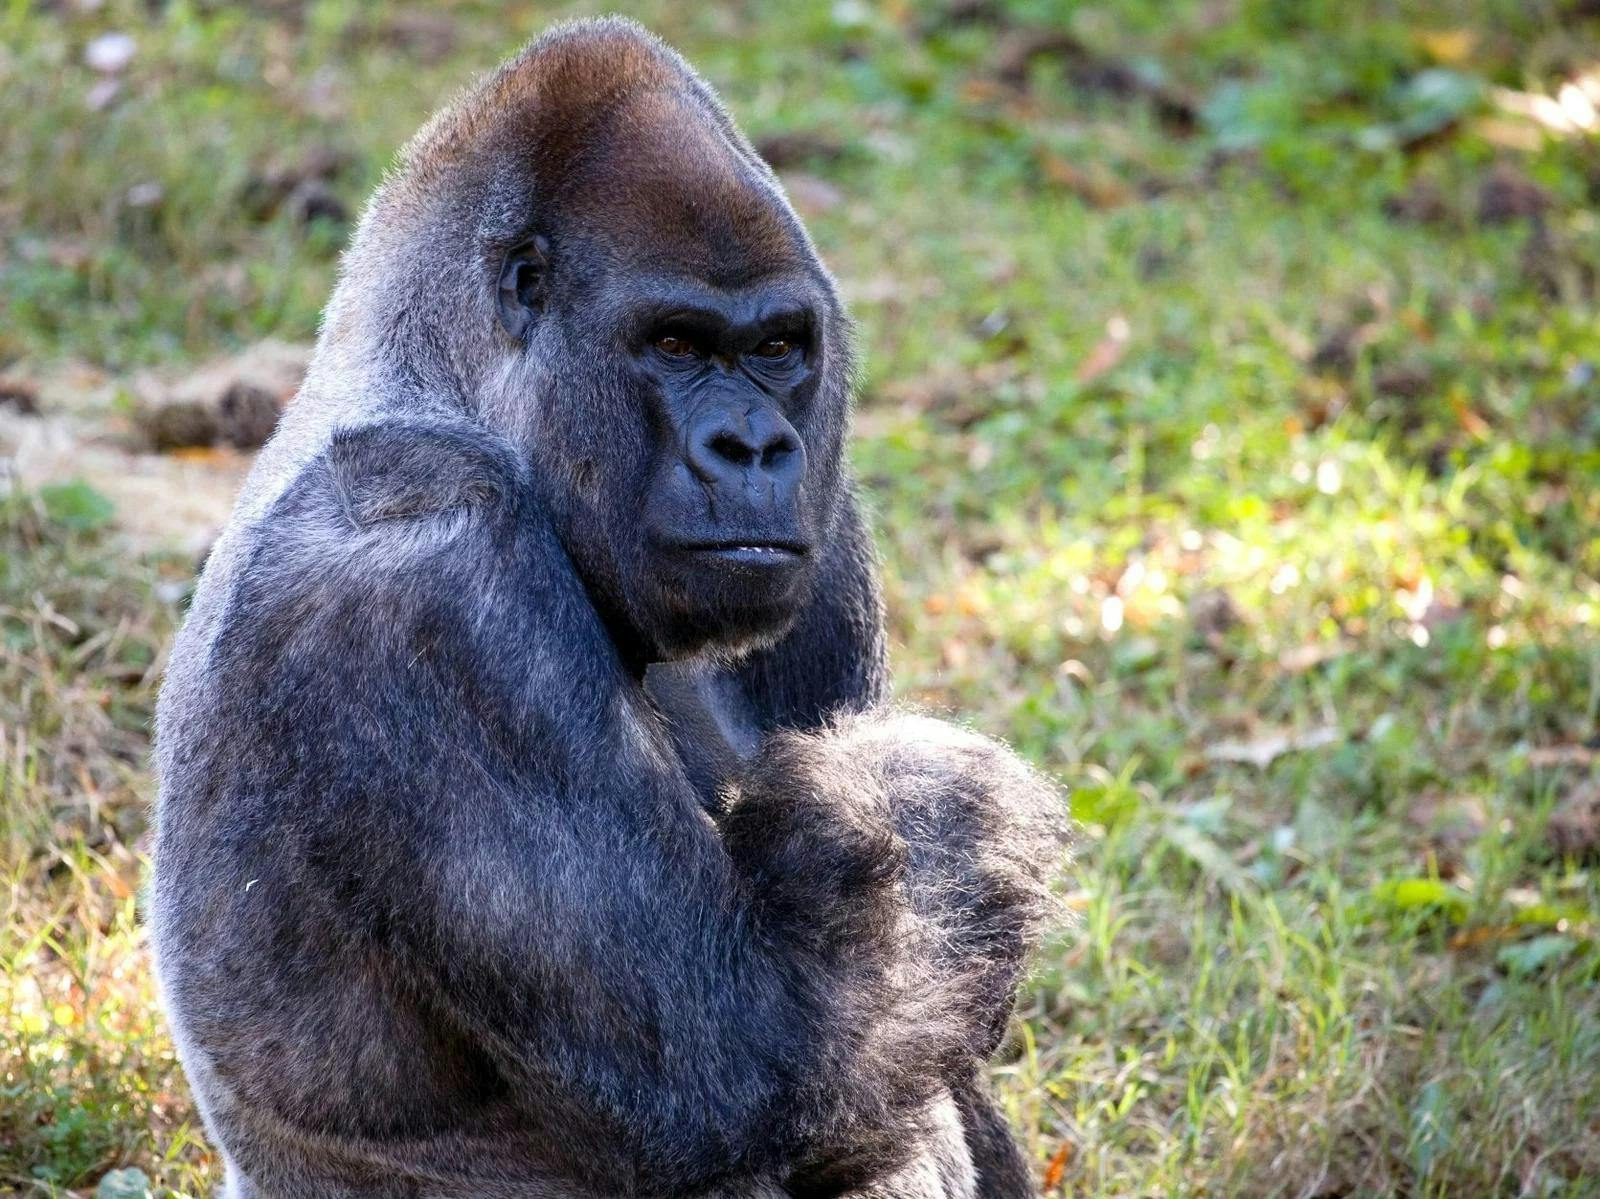 World’s oldest male gorilla dies at 61